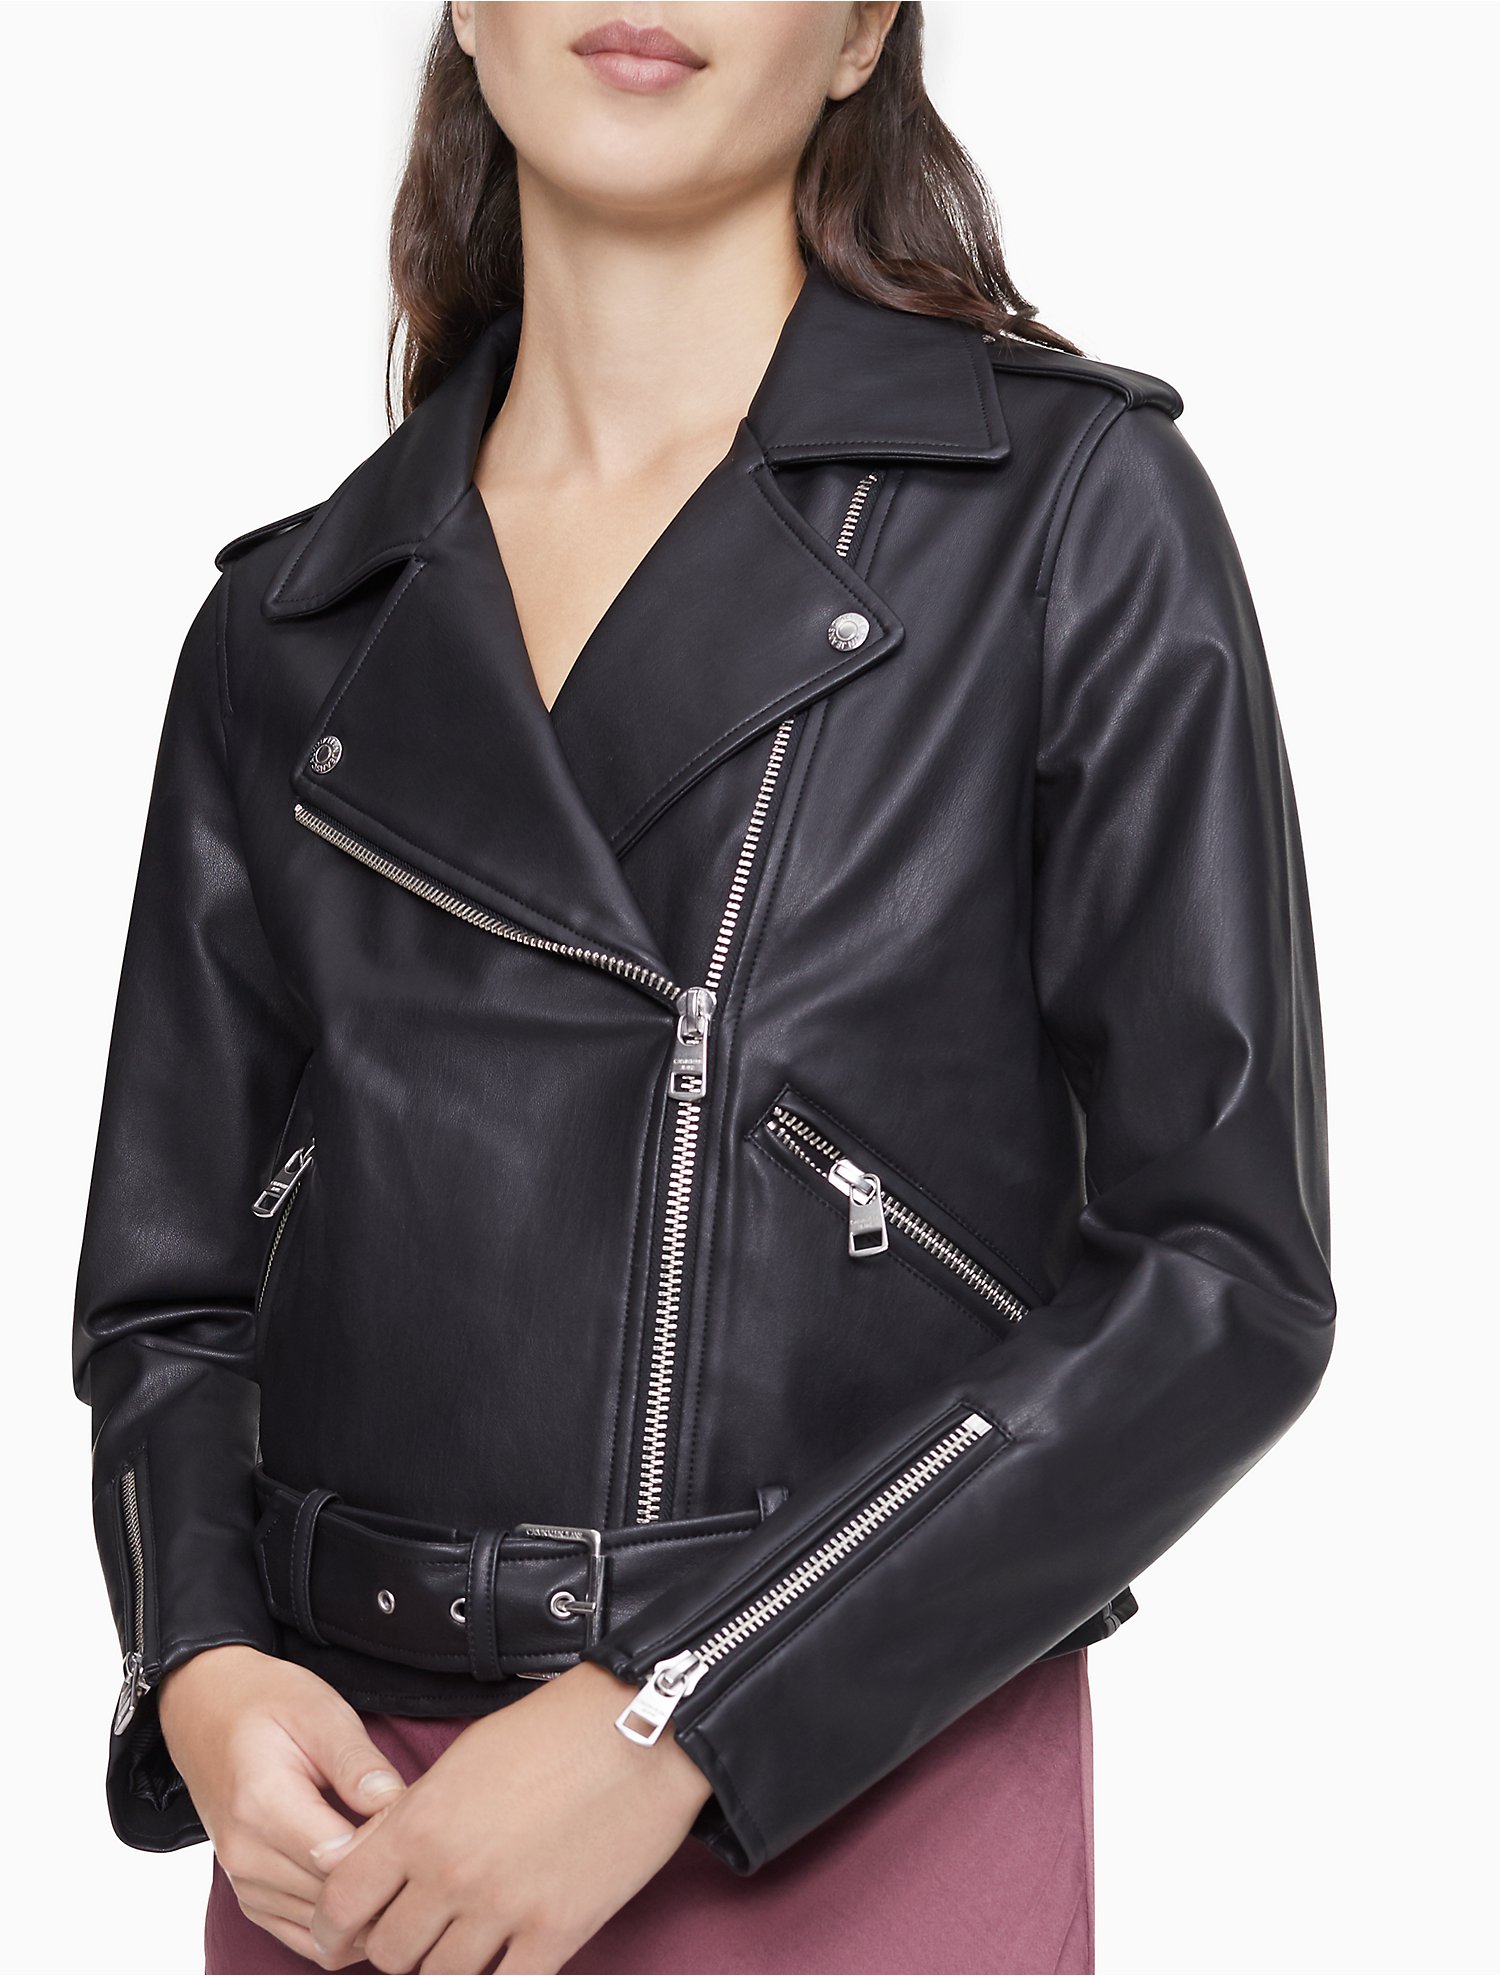 Arriba 73+ imagen calvin klein faux leather jacket women’s